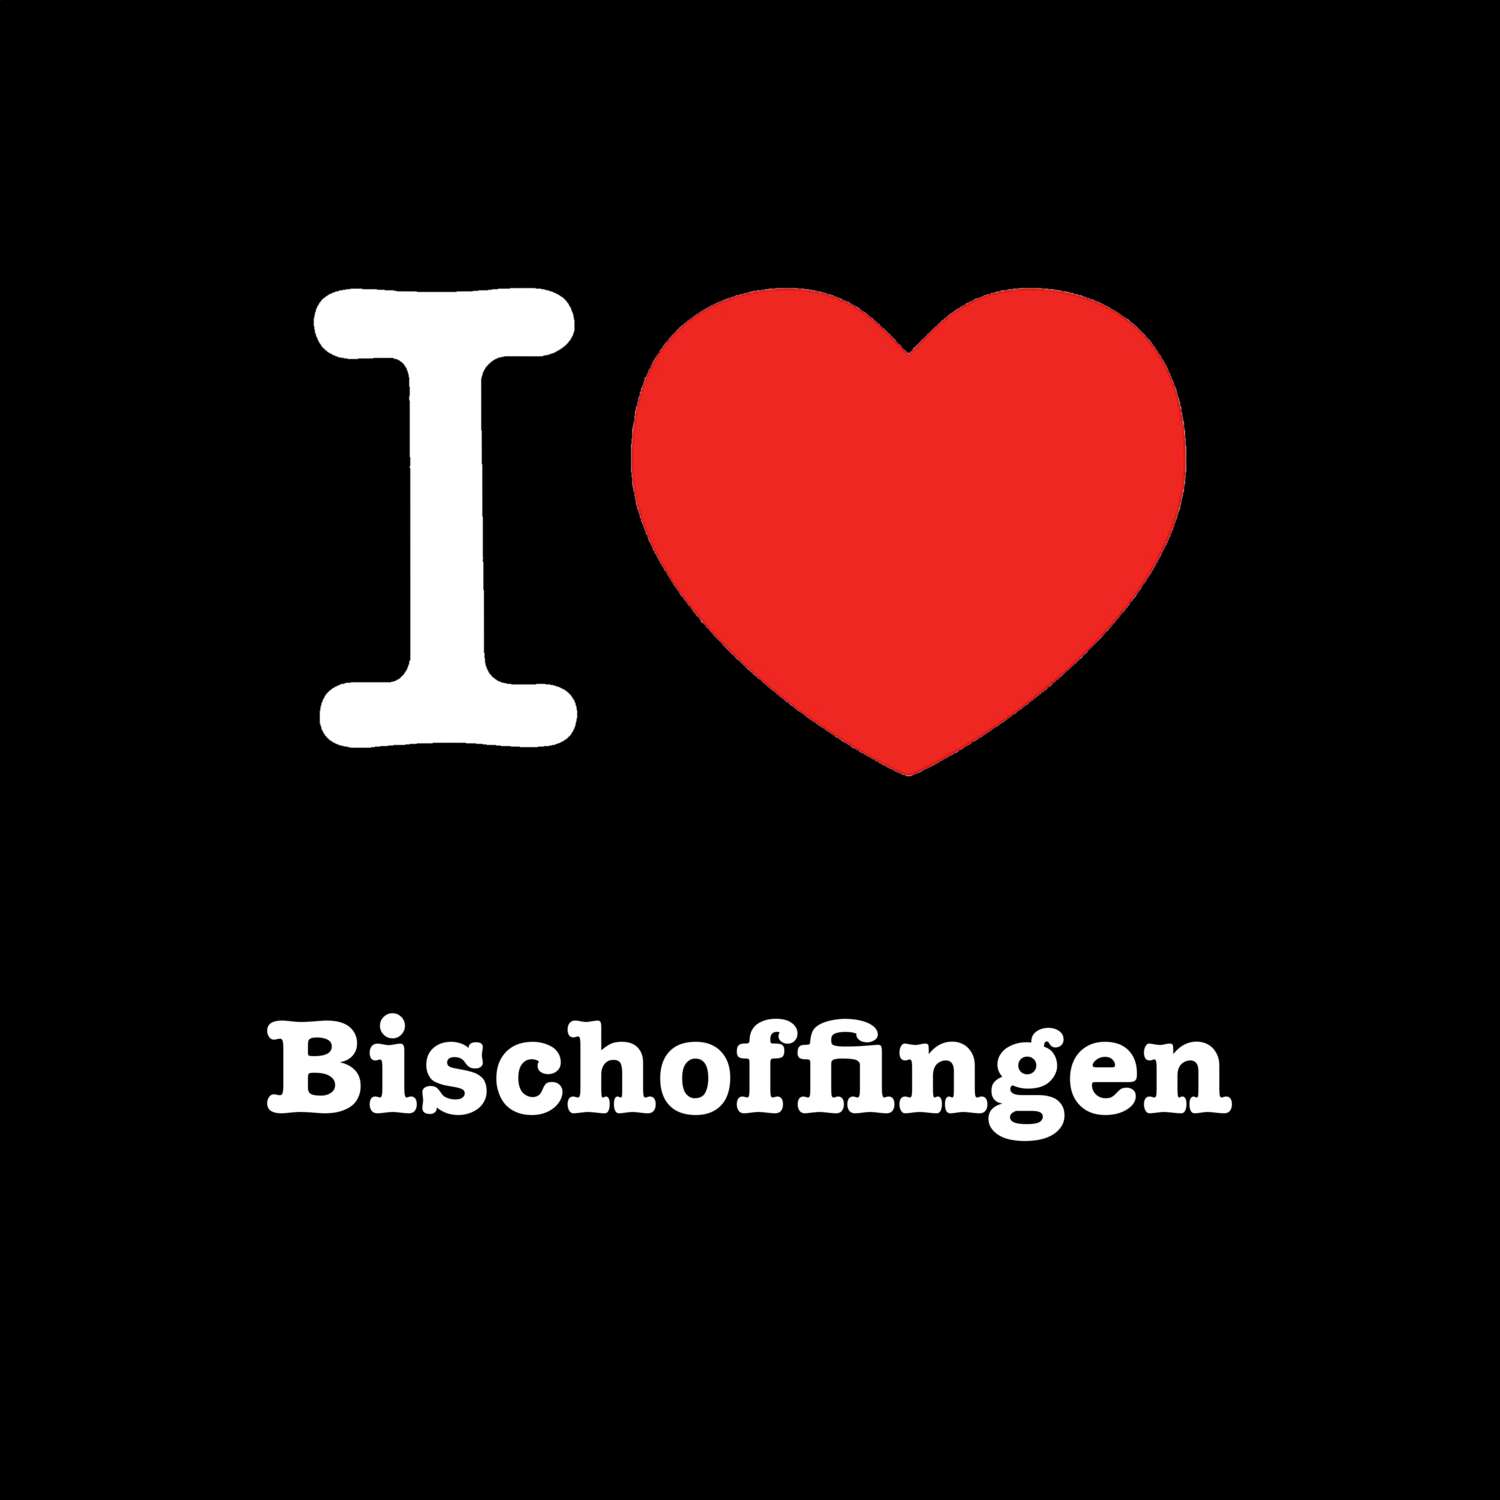 Bischoffingen T-Shirt »I love«